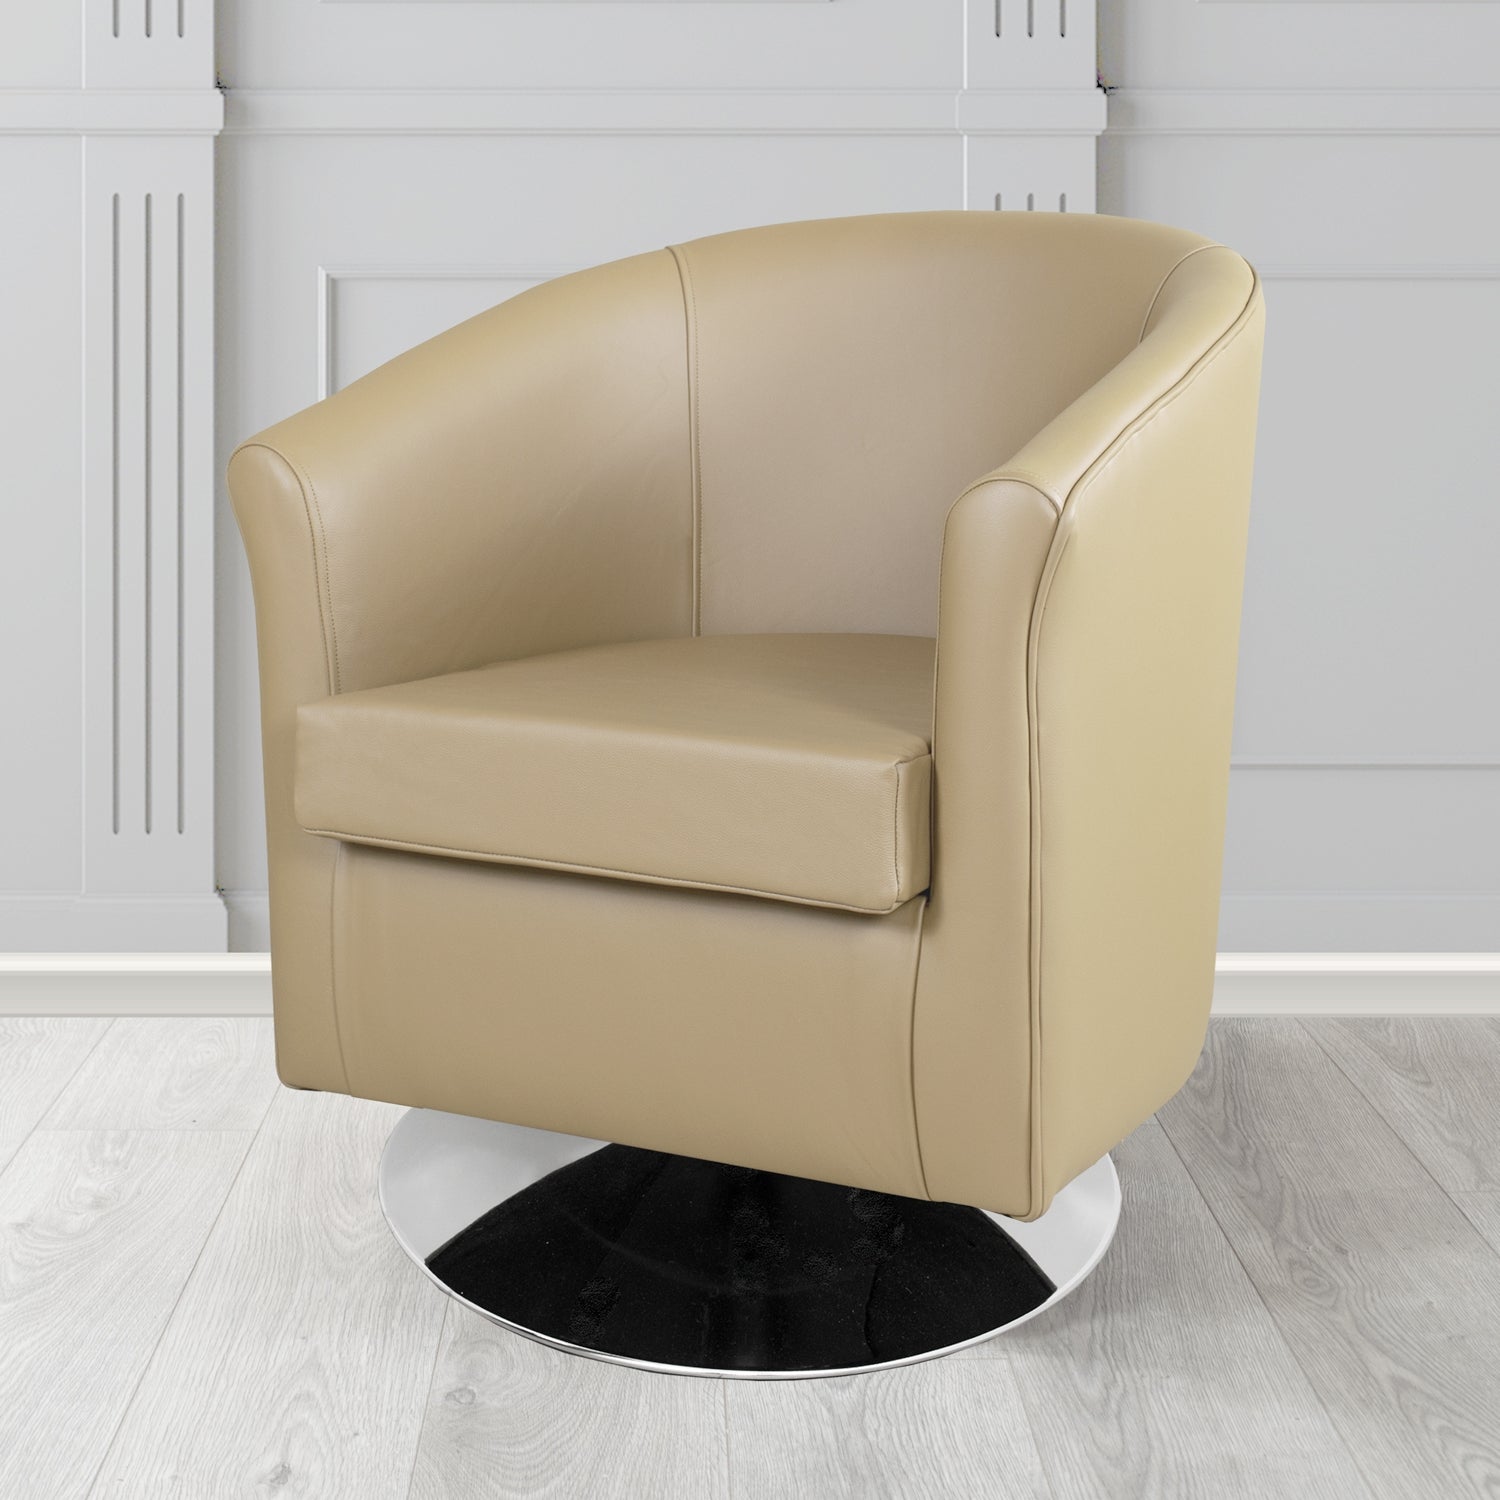 Tuscany Shelly Pebble Crib 5 Genuine Leather Swivel Tub Chair - The Tub Chair Shop